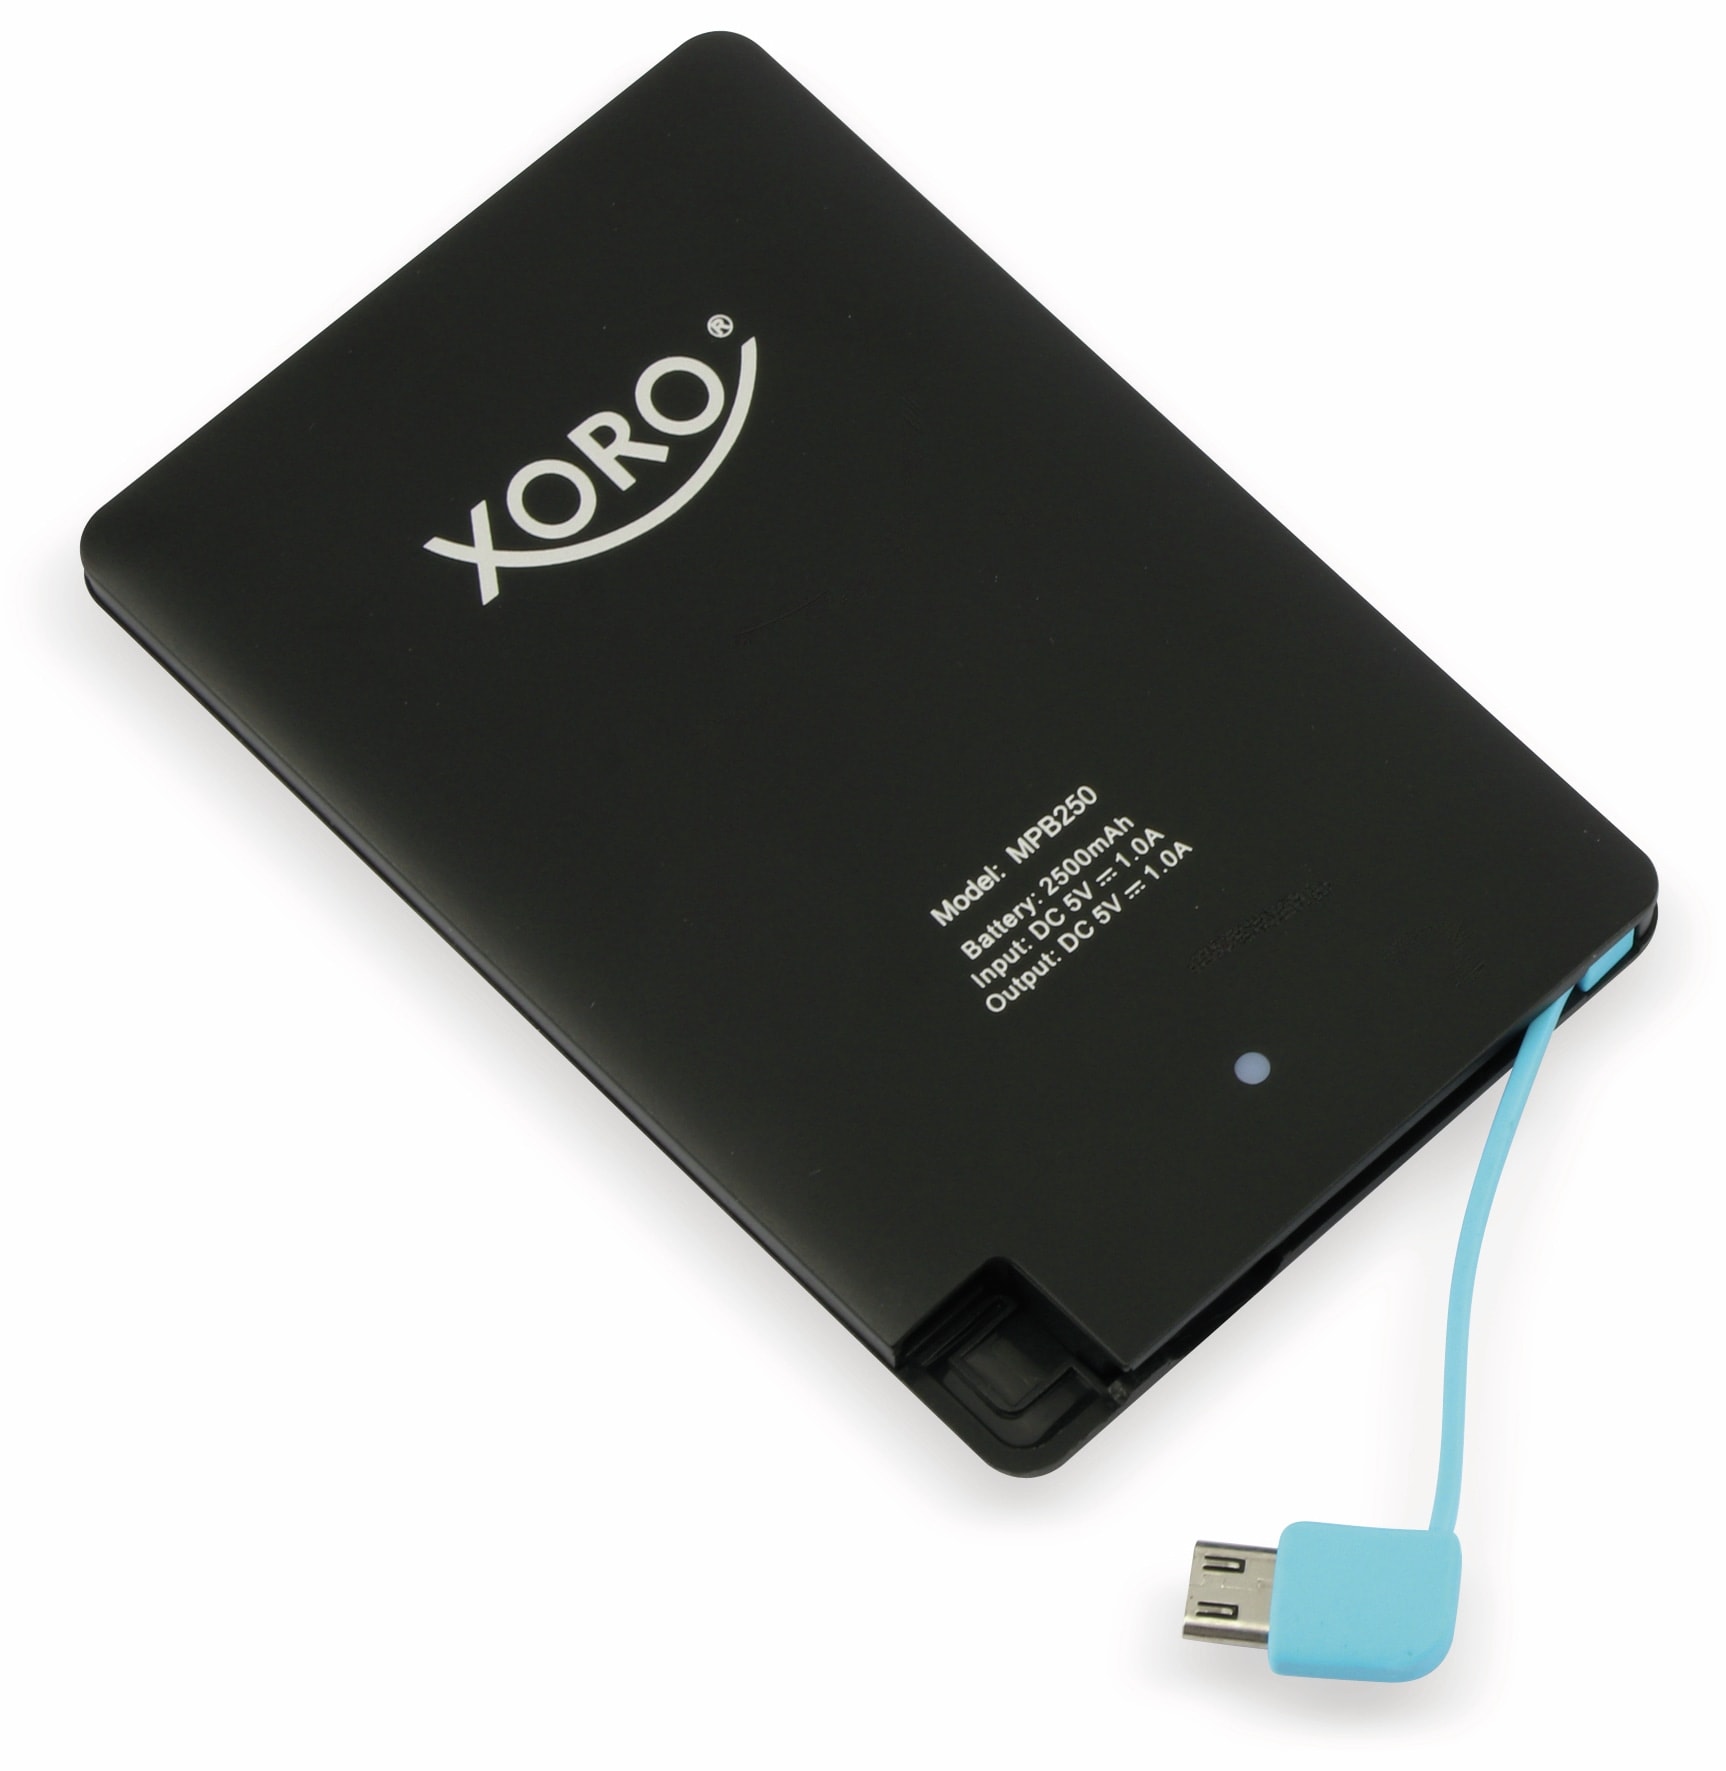 XORO USB Powerbank MPB 250, 2500 mAh, schwarz